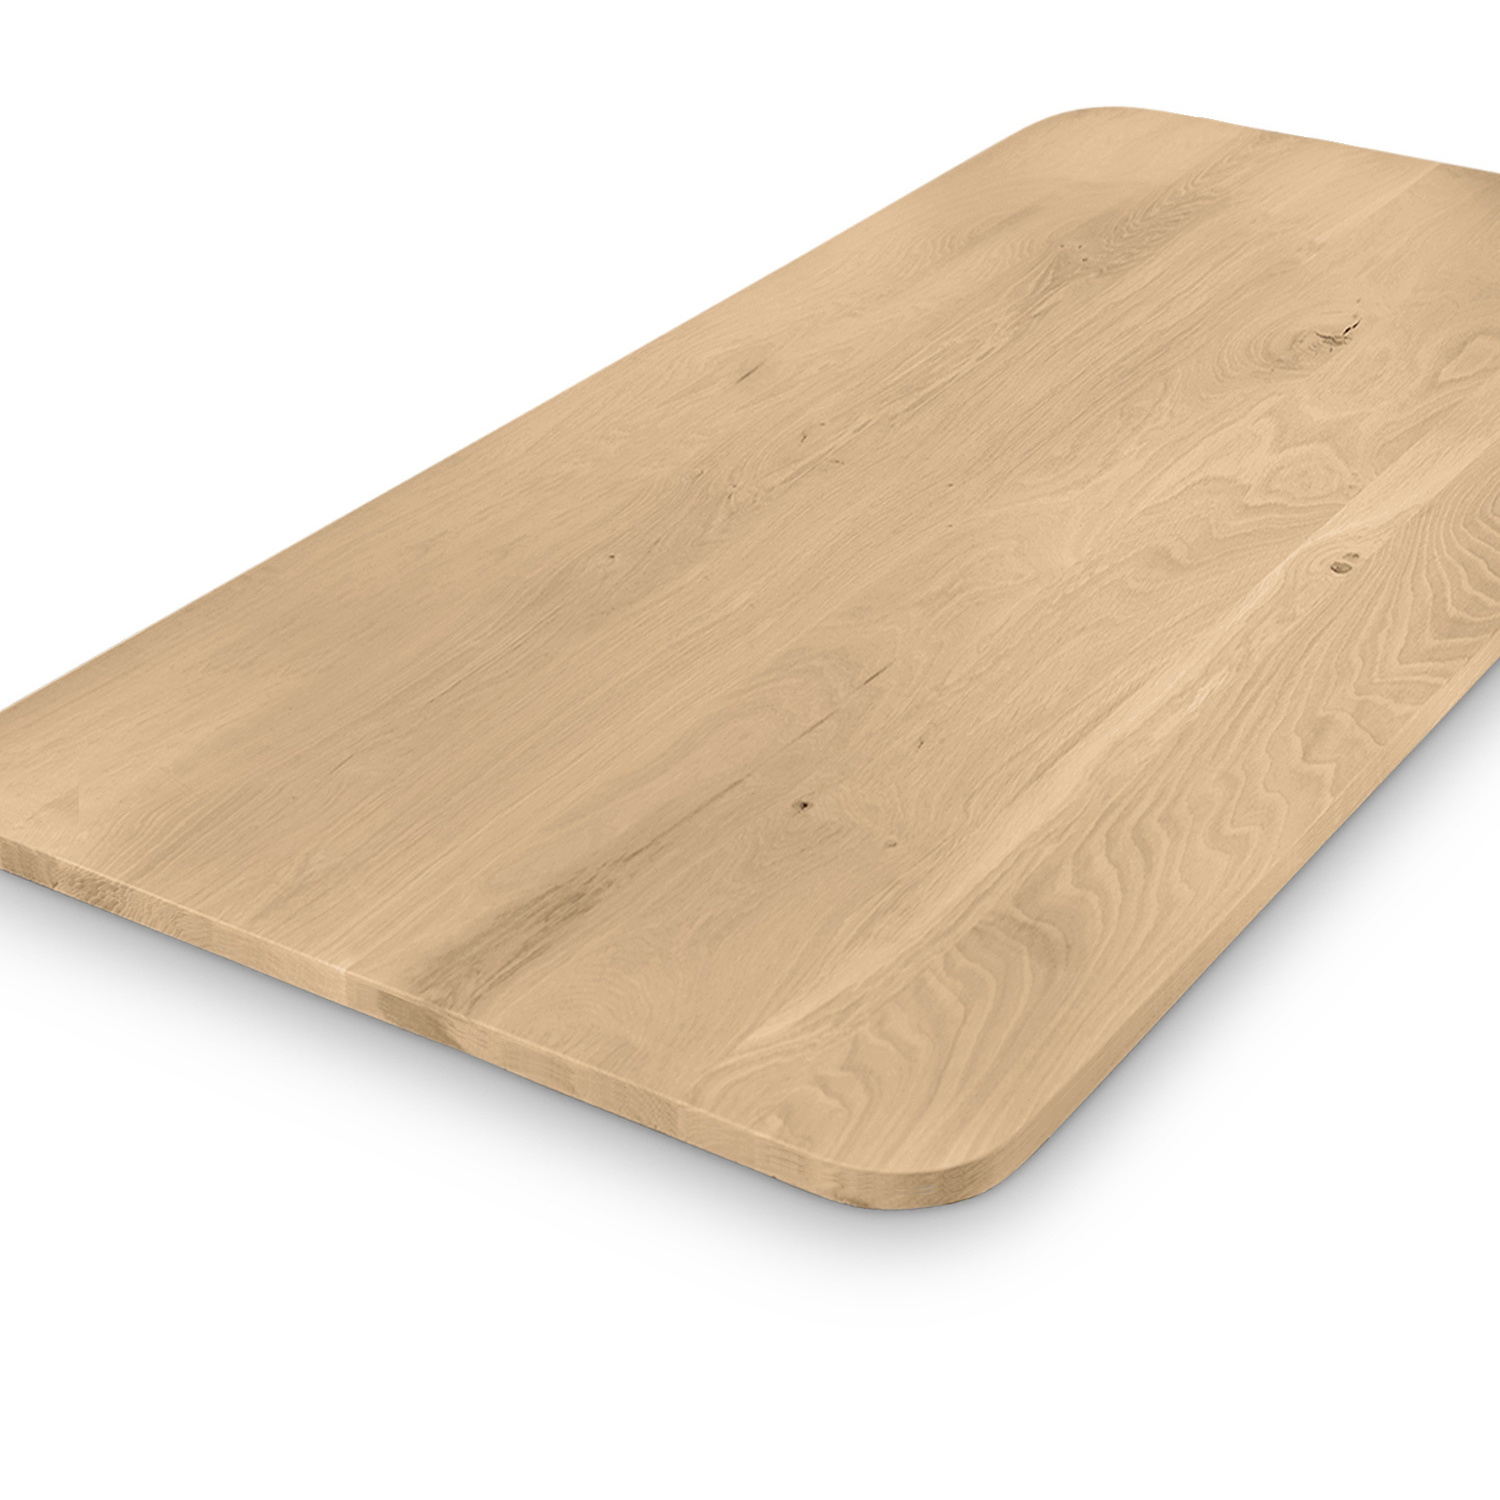  Tischplatte Eiche - mit runden Ecken - nach Maß - 4 cm dick (1-Schicht) - Breite Lamellen (10 - 12 cm breit) - Eichenholz rustikal - verleimt & künstlich getrocknet (HF 8-12%) - mit abgerundeten Kanten - 50-120x50-248 cm